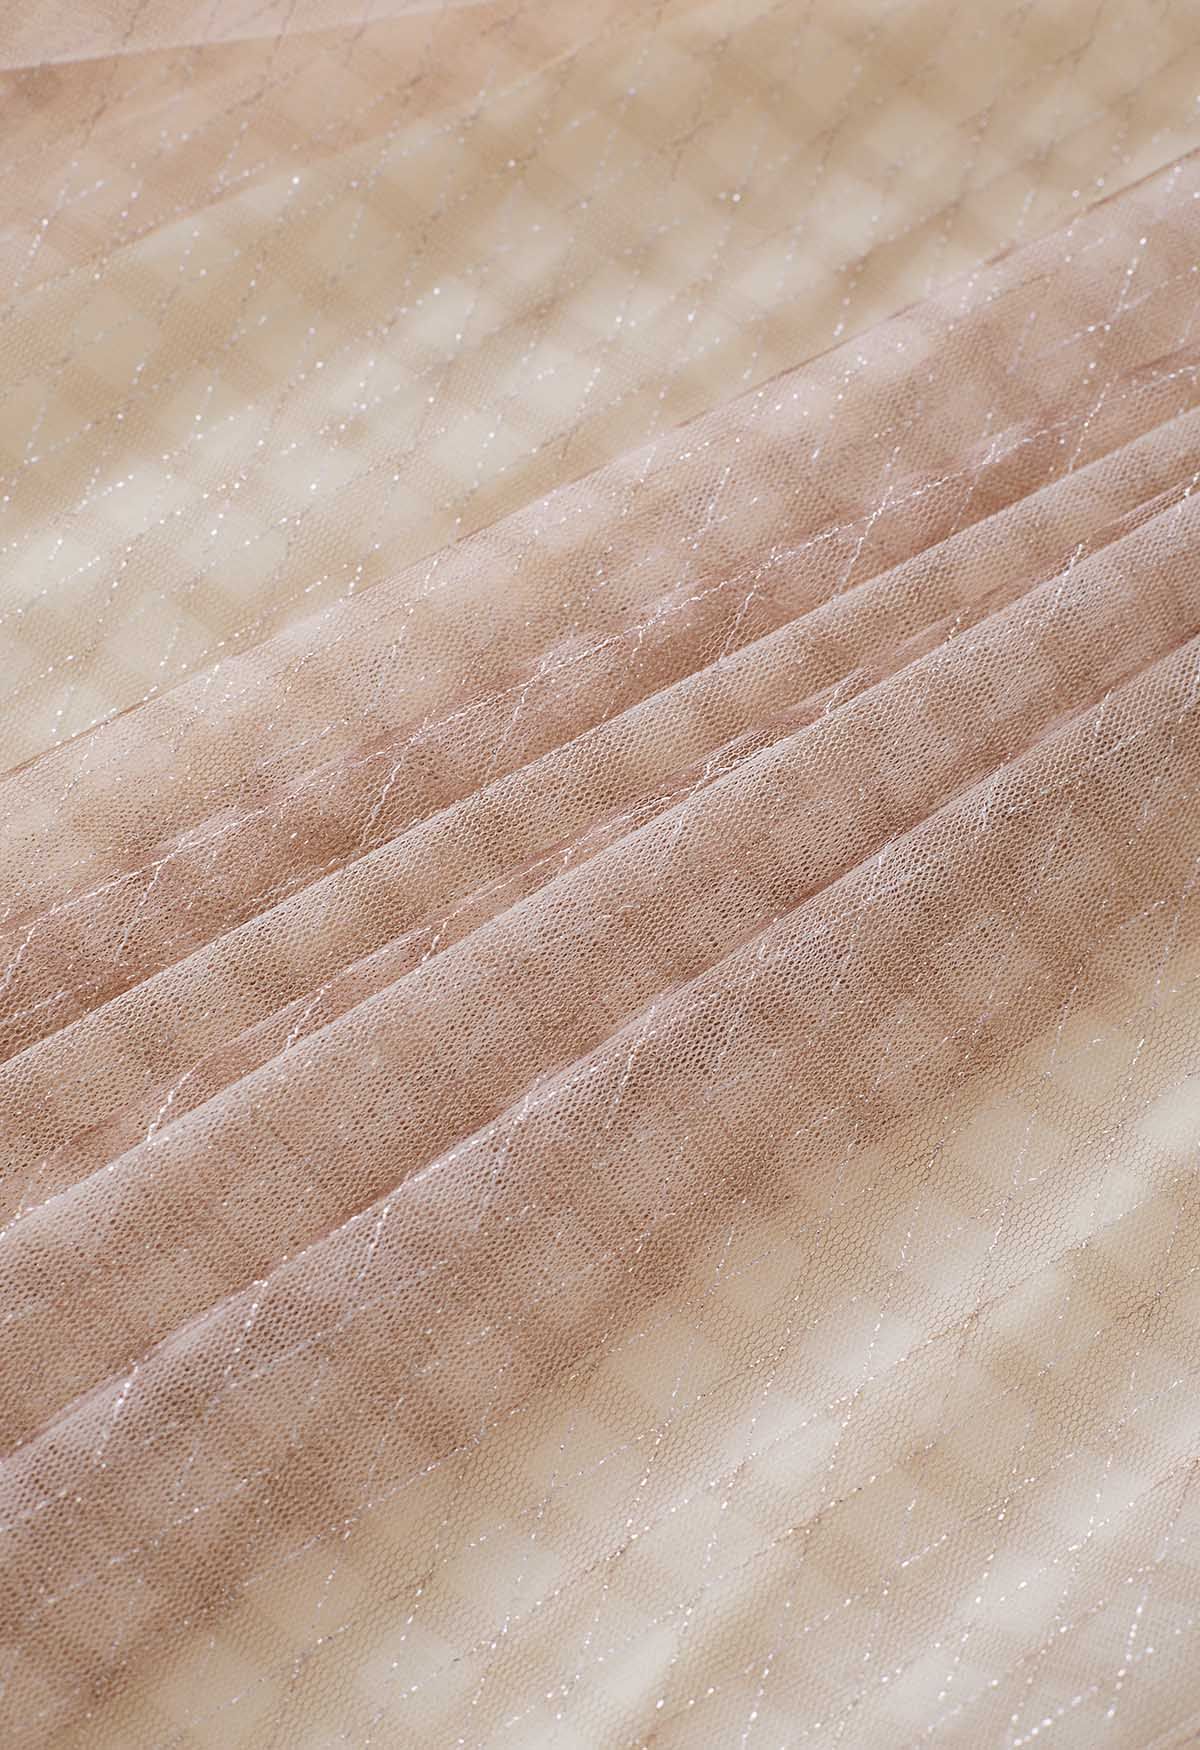 Metallic Thread Diamond-Shape Mesh Tulle Skirt in Tan